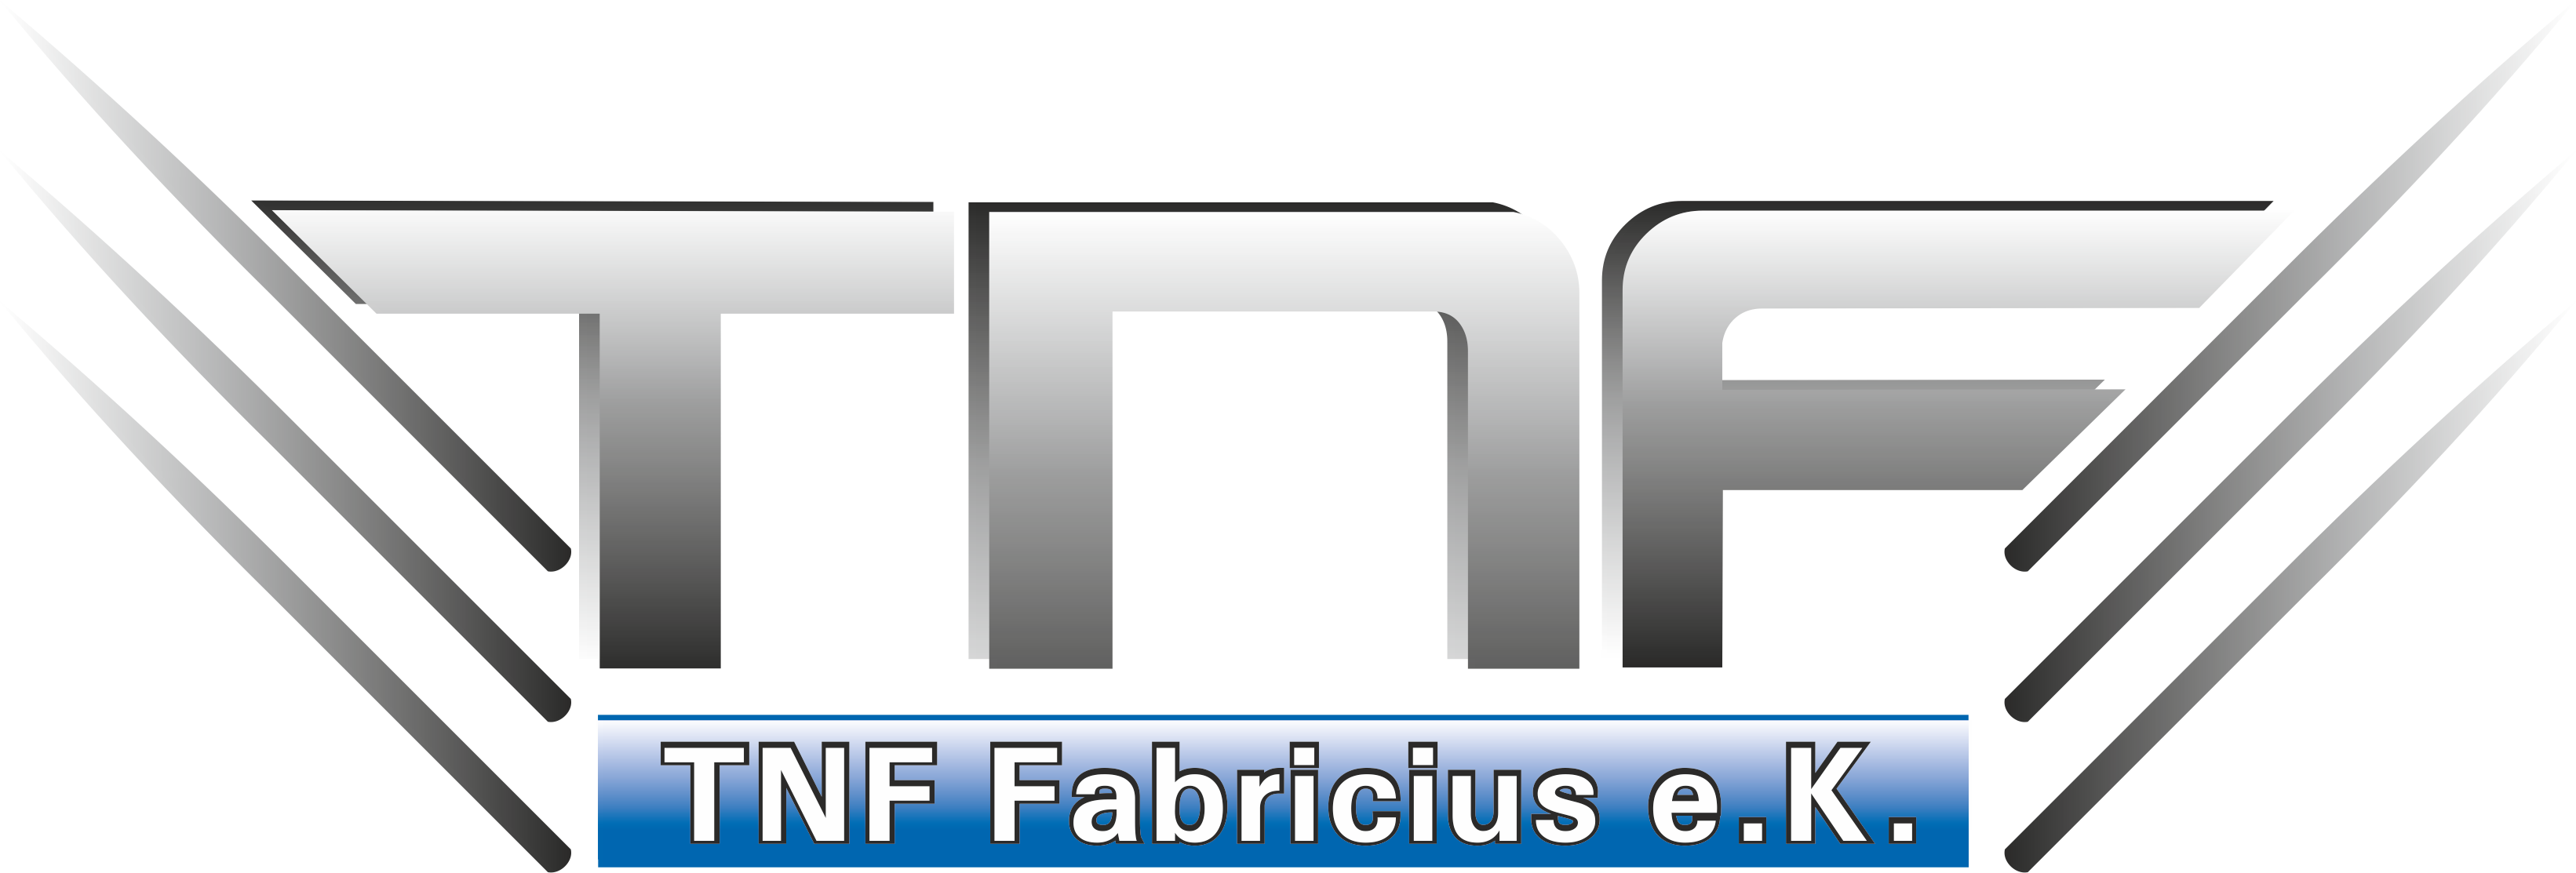 Logo TNF final 14082013 1